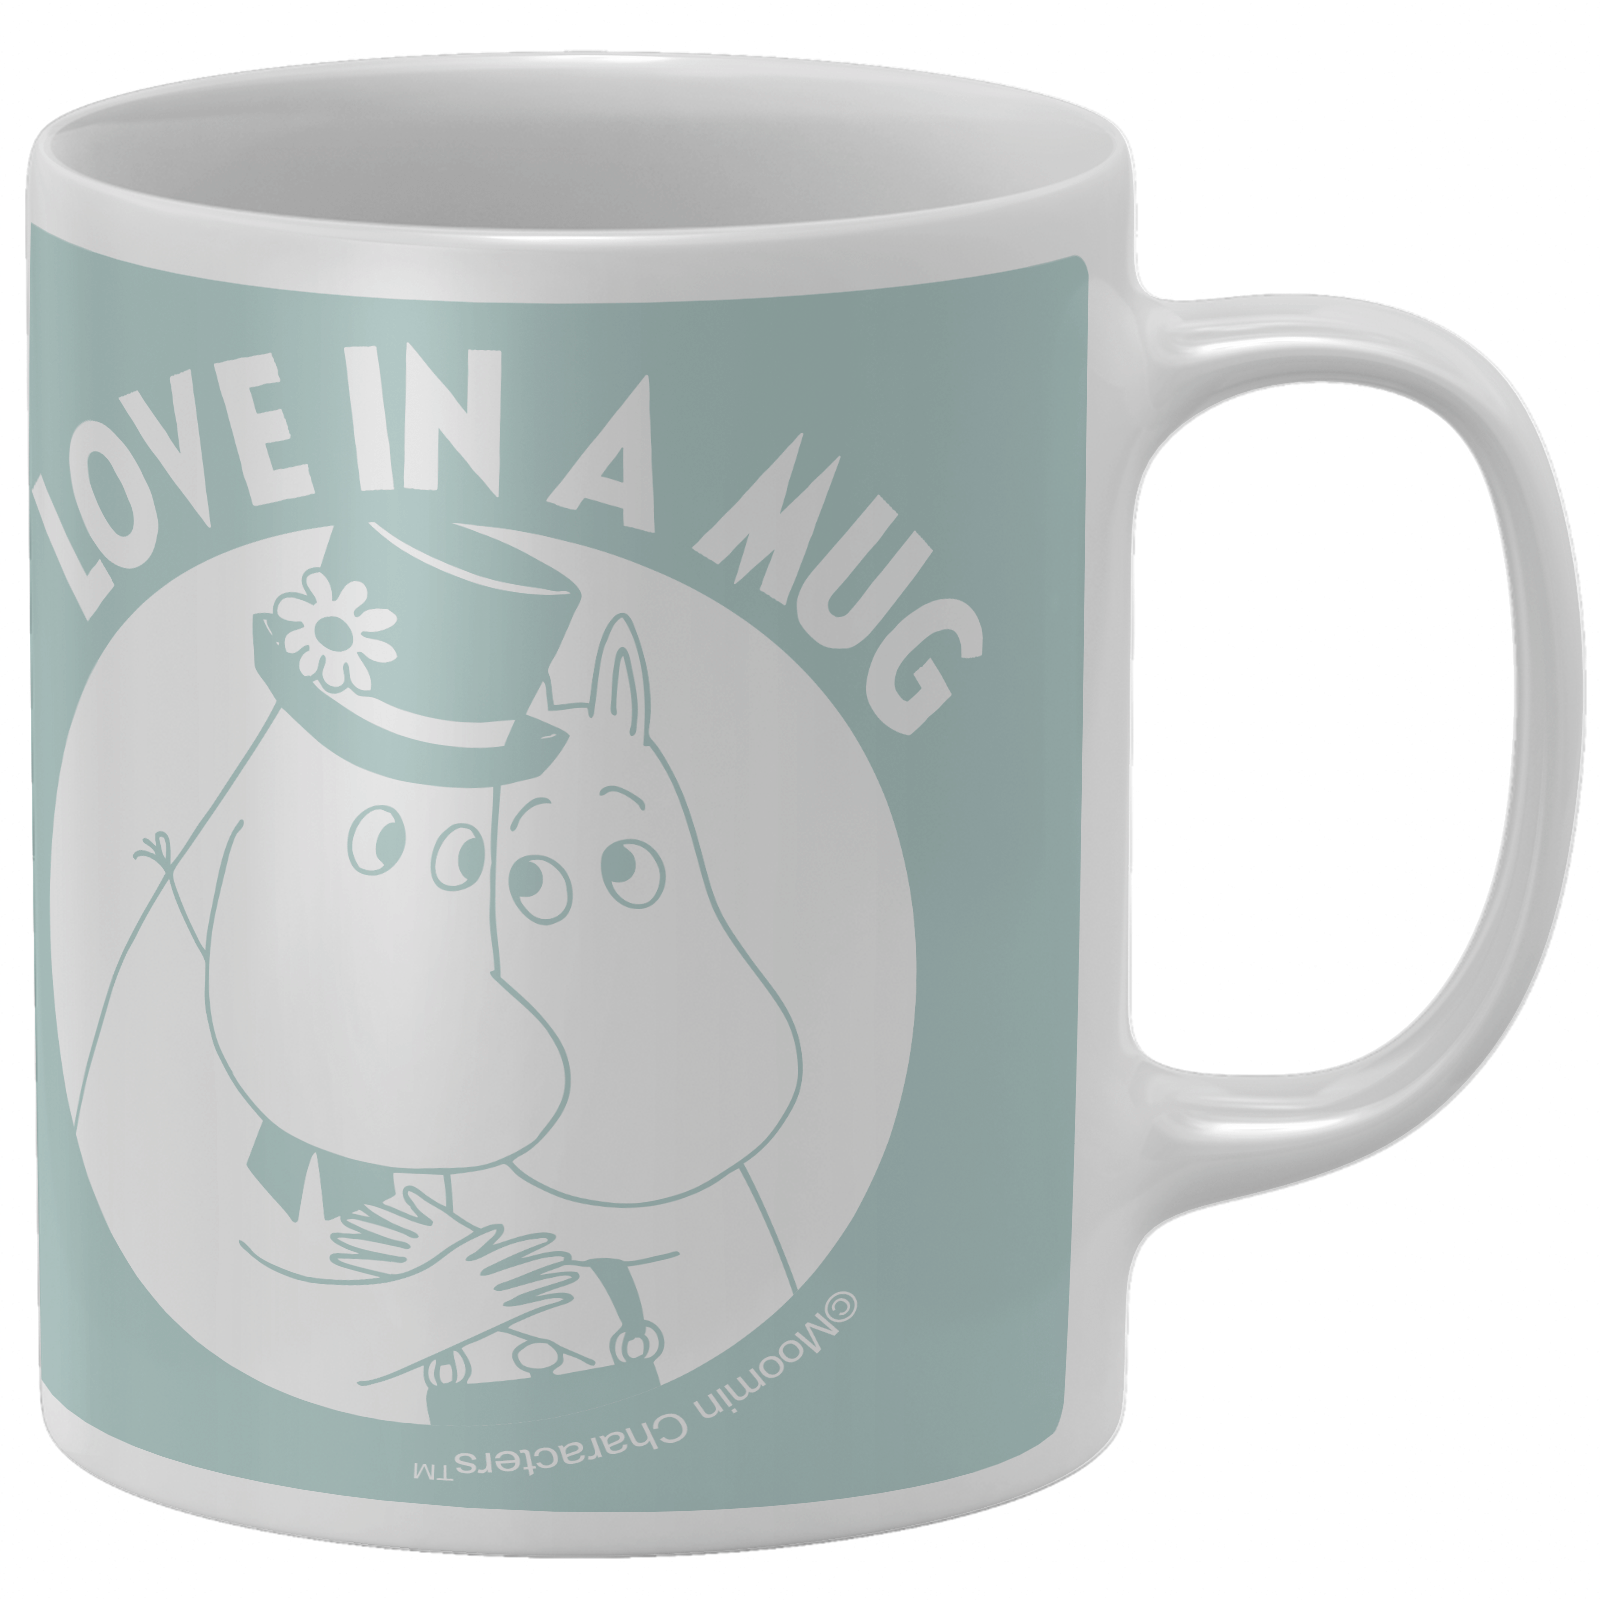 Moomins Love In A Mug Mug